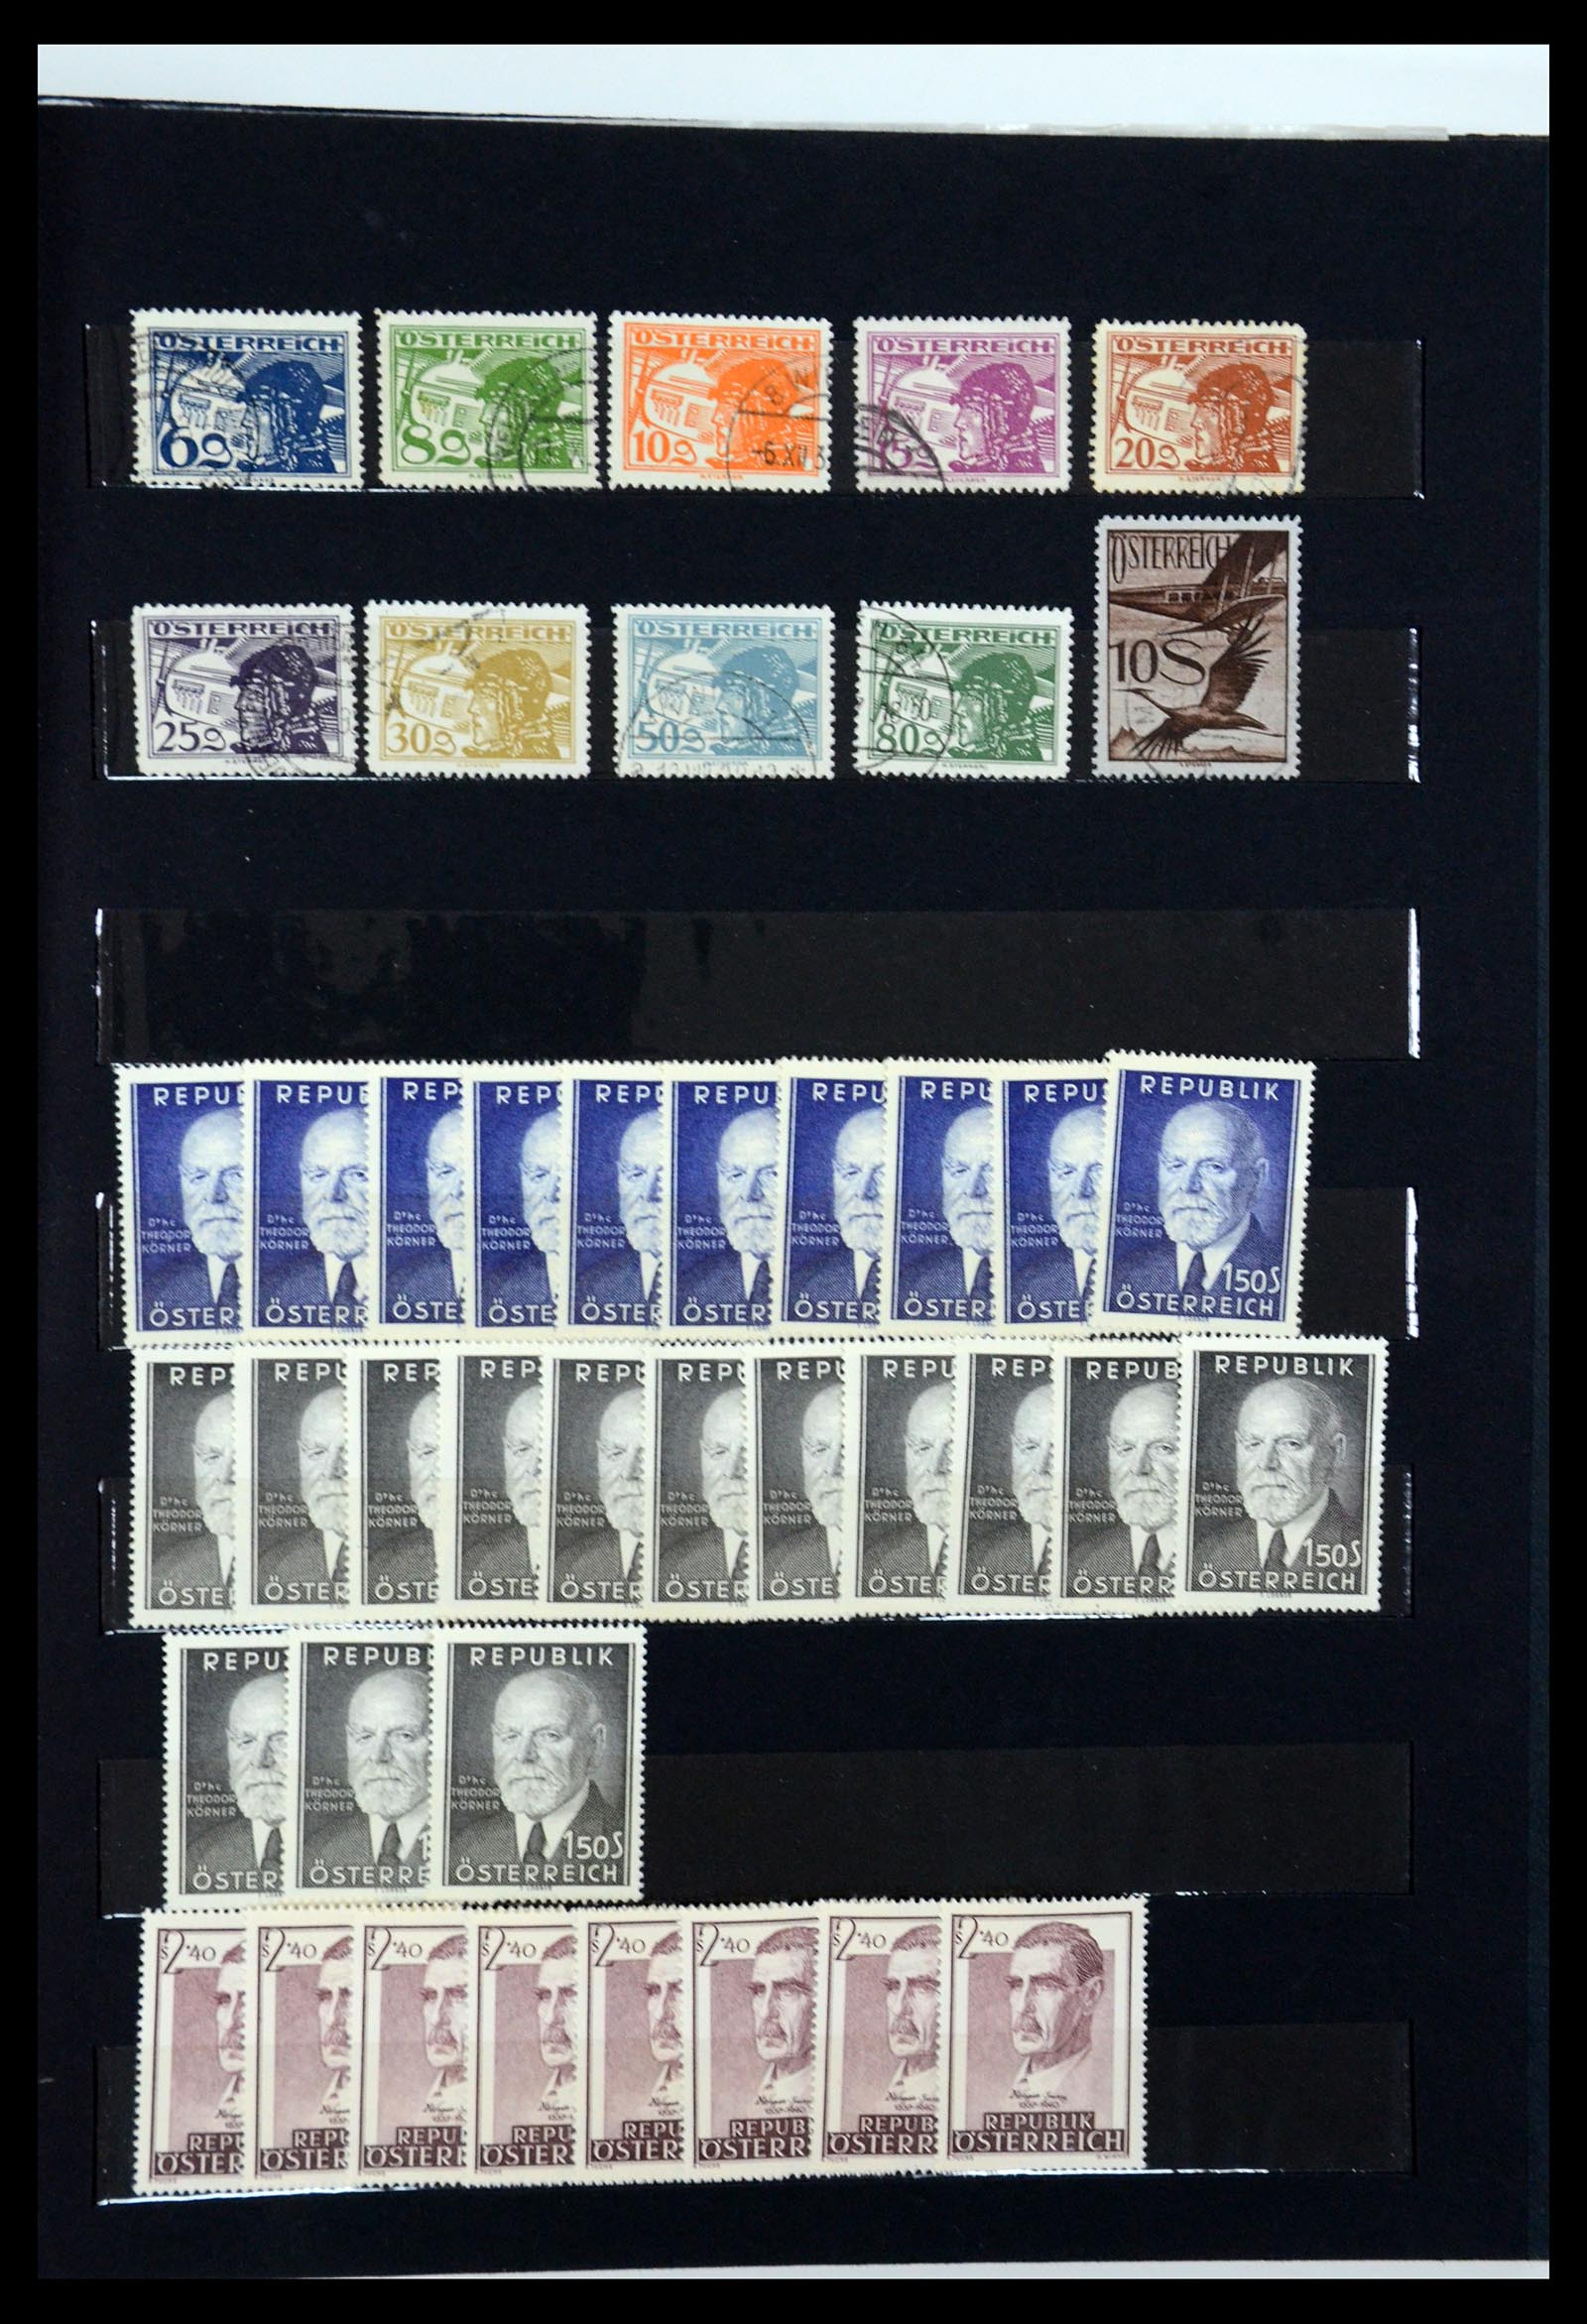 36002 015 - Postzegelverzameling 36002 Oostenrijk en gebieden 1858-1958.